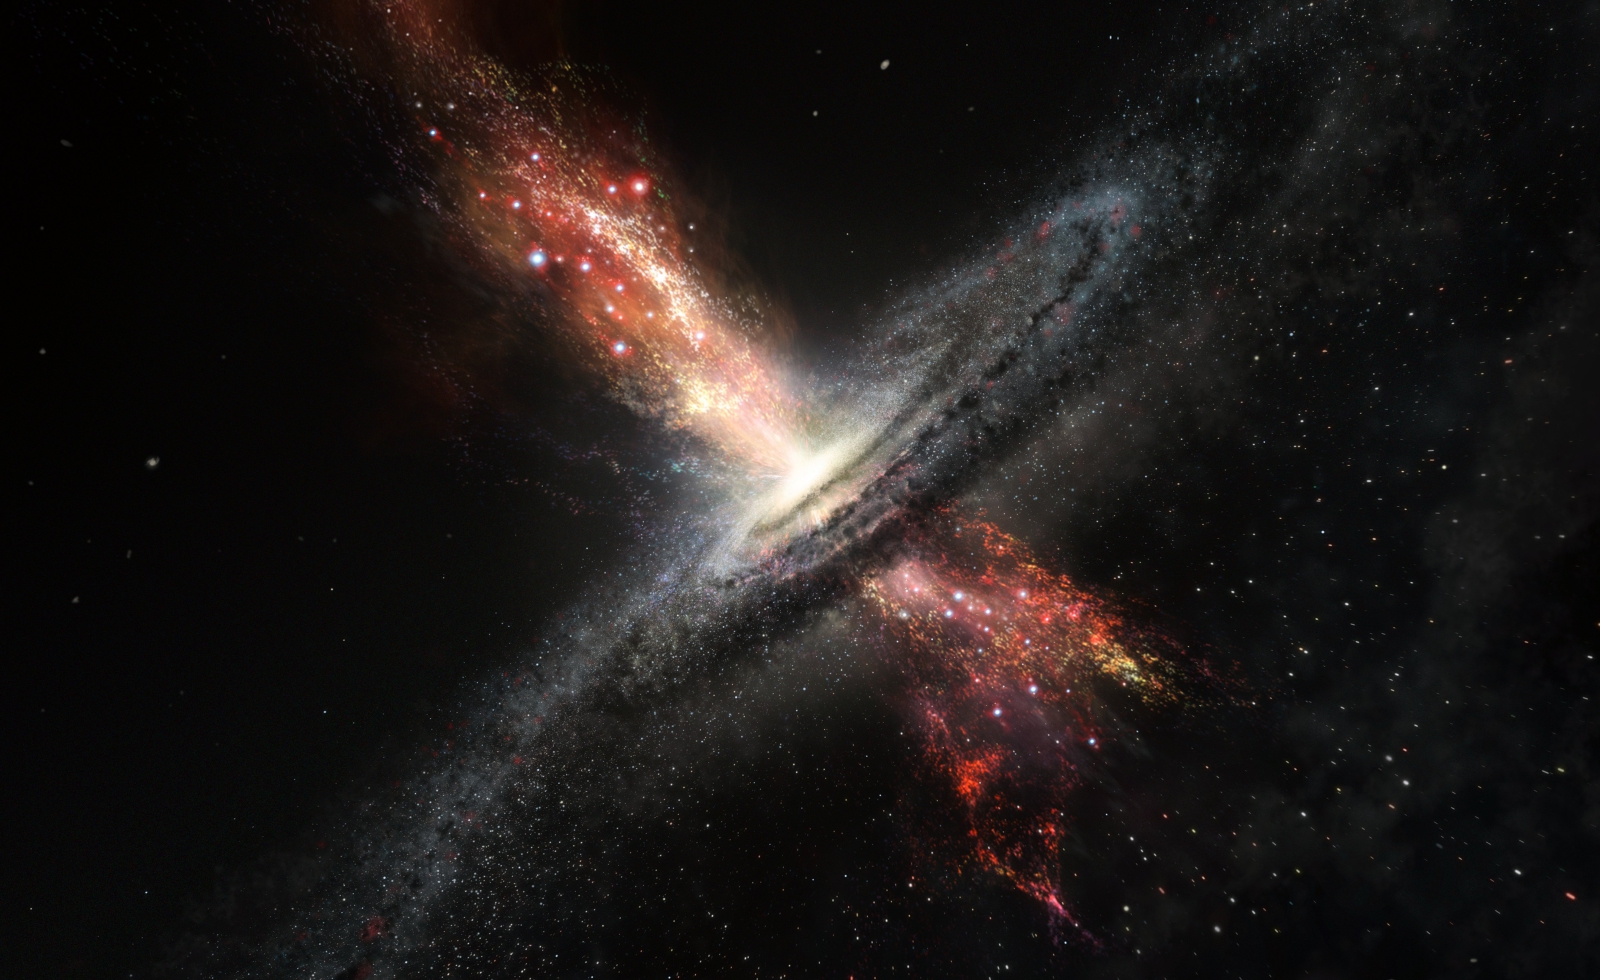 Zdjęcie opublikowane przez Południowe Europejskie Obserwatorium Astronomiczne pokazujące artystyczną wizję galaktyki.